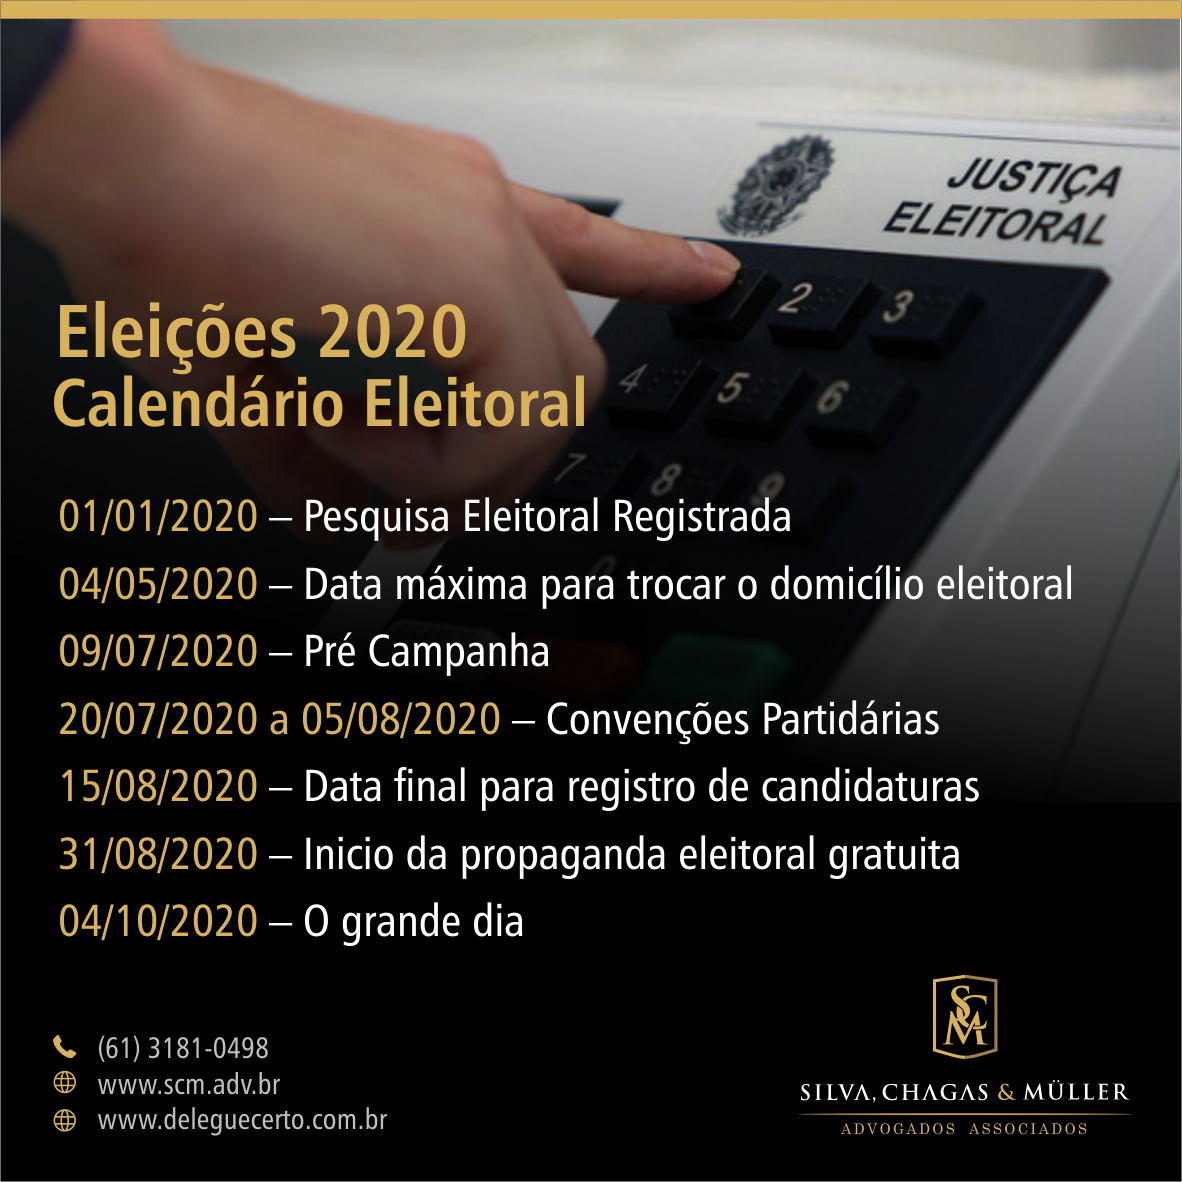 You are currently viewing Eleições 2020 – Calendário Eleitoral